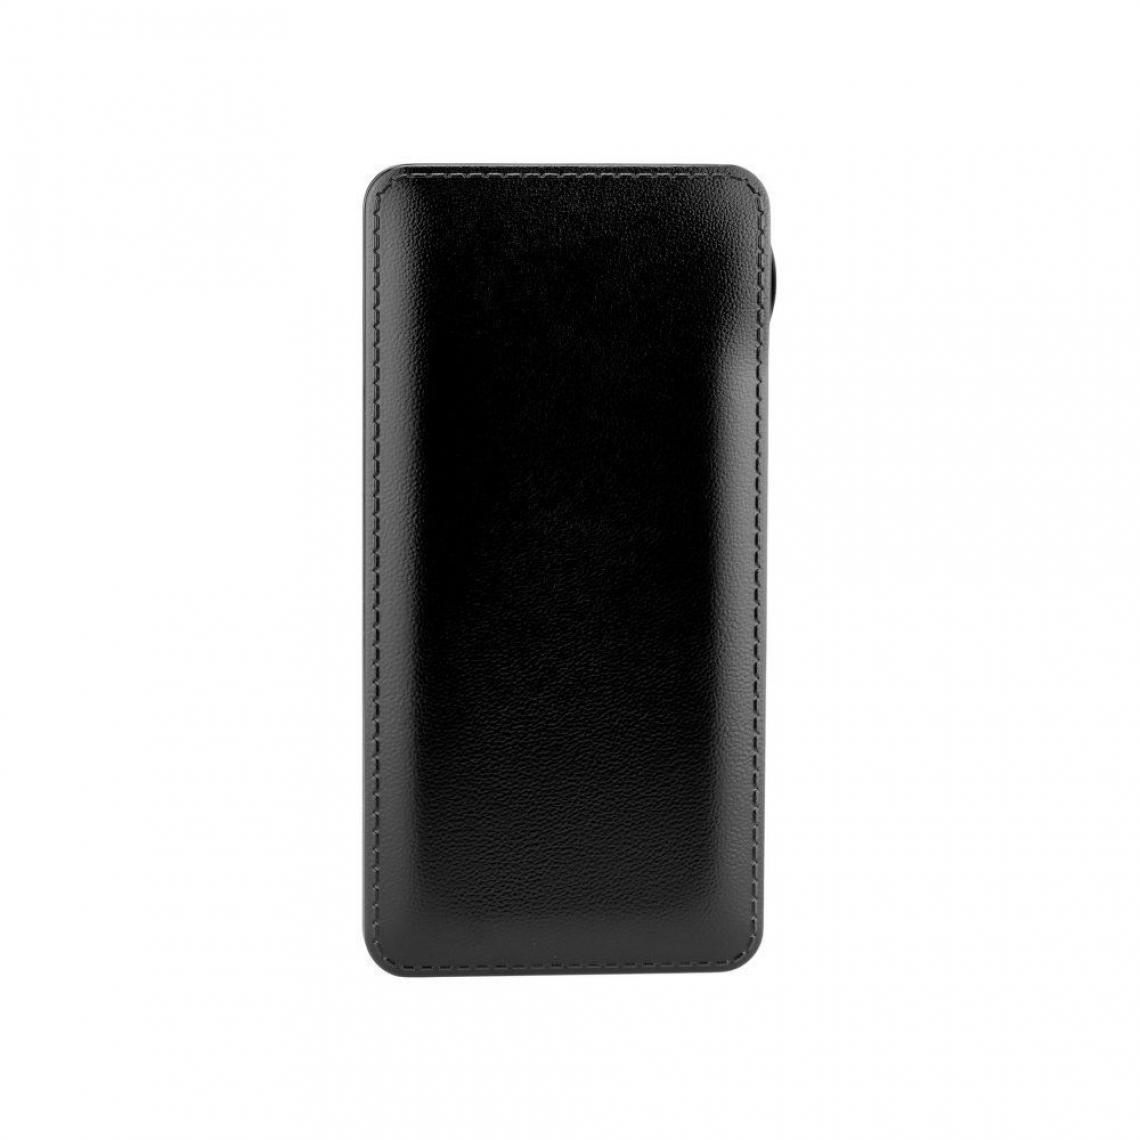 Ozzzo - Chargeur batterie externe 20000 mAh powerbank ozzzo noir pour Doogee BL5000 - Autres accessoires smartphone